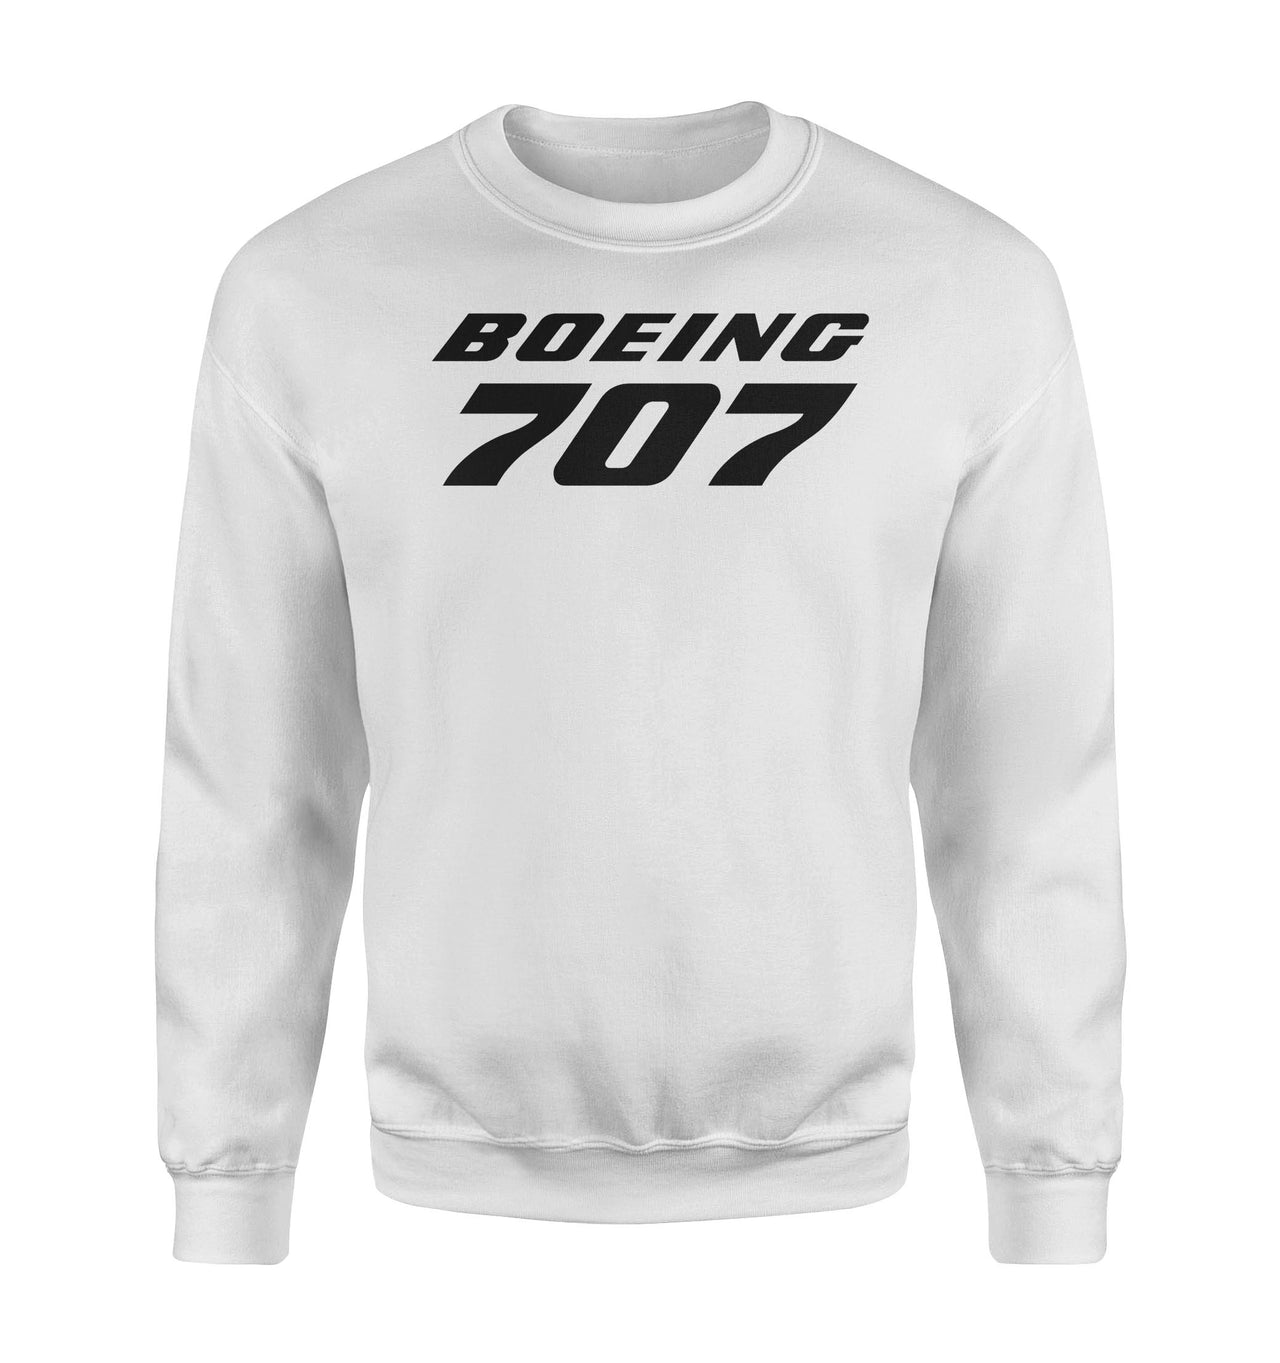 Boeing 707 & Text Designed Sweatshirts